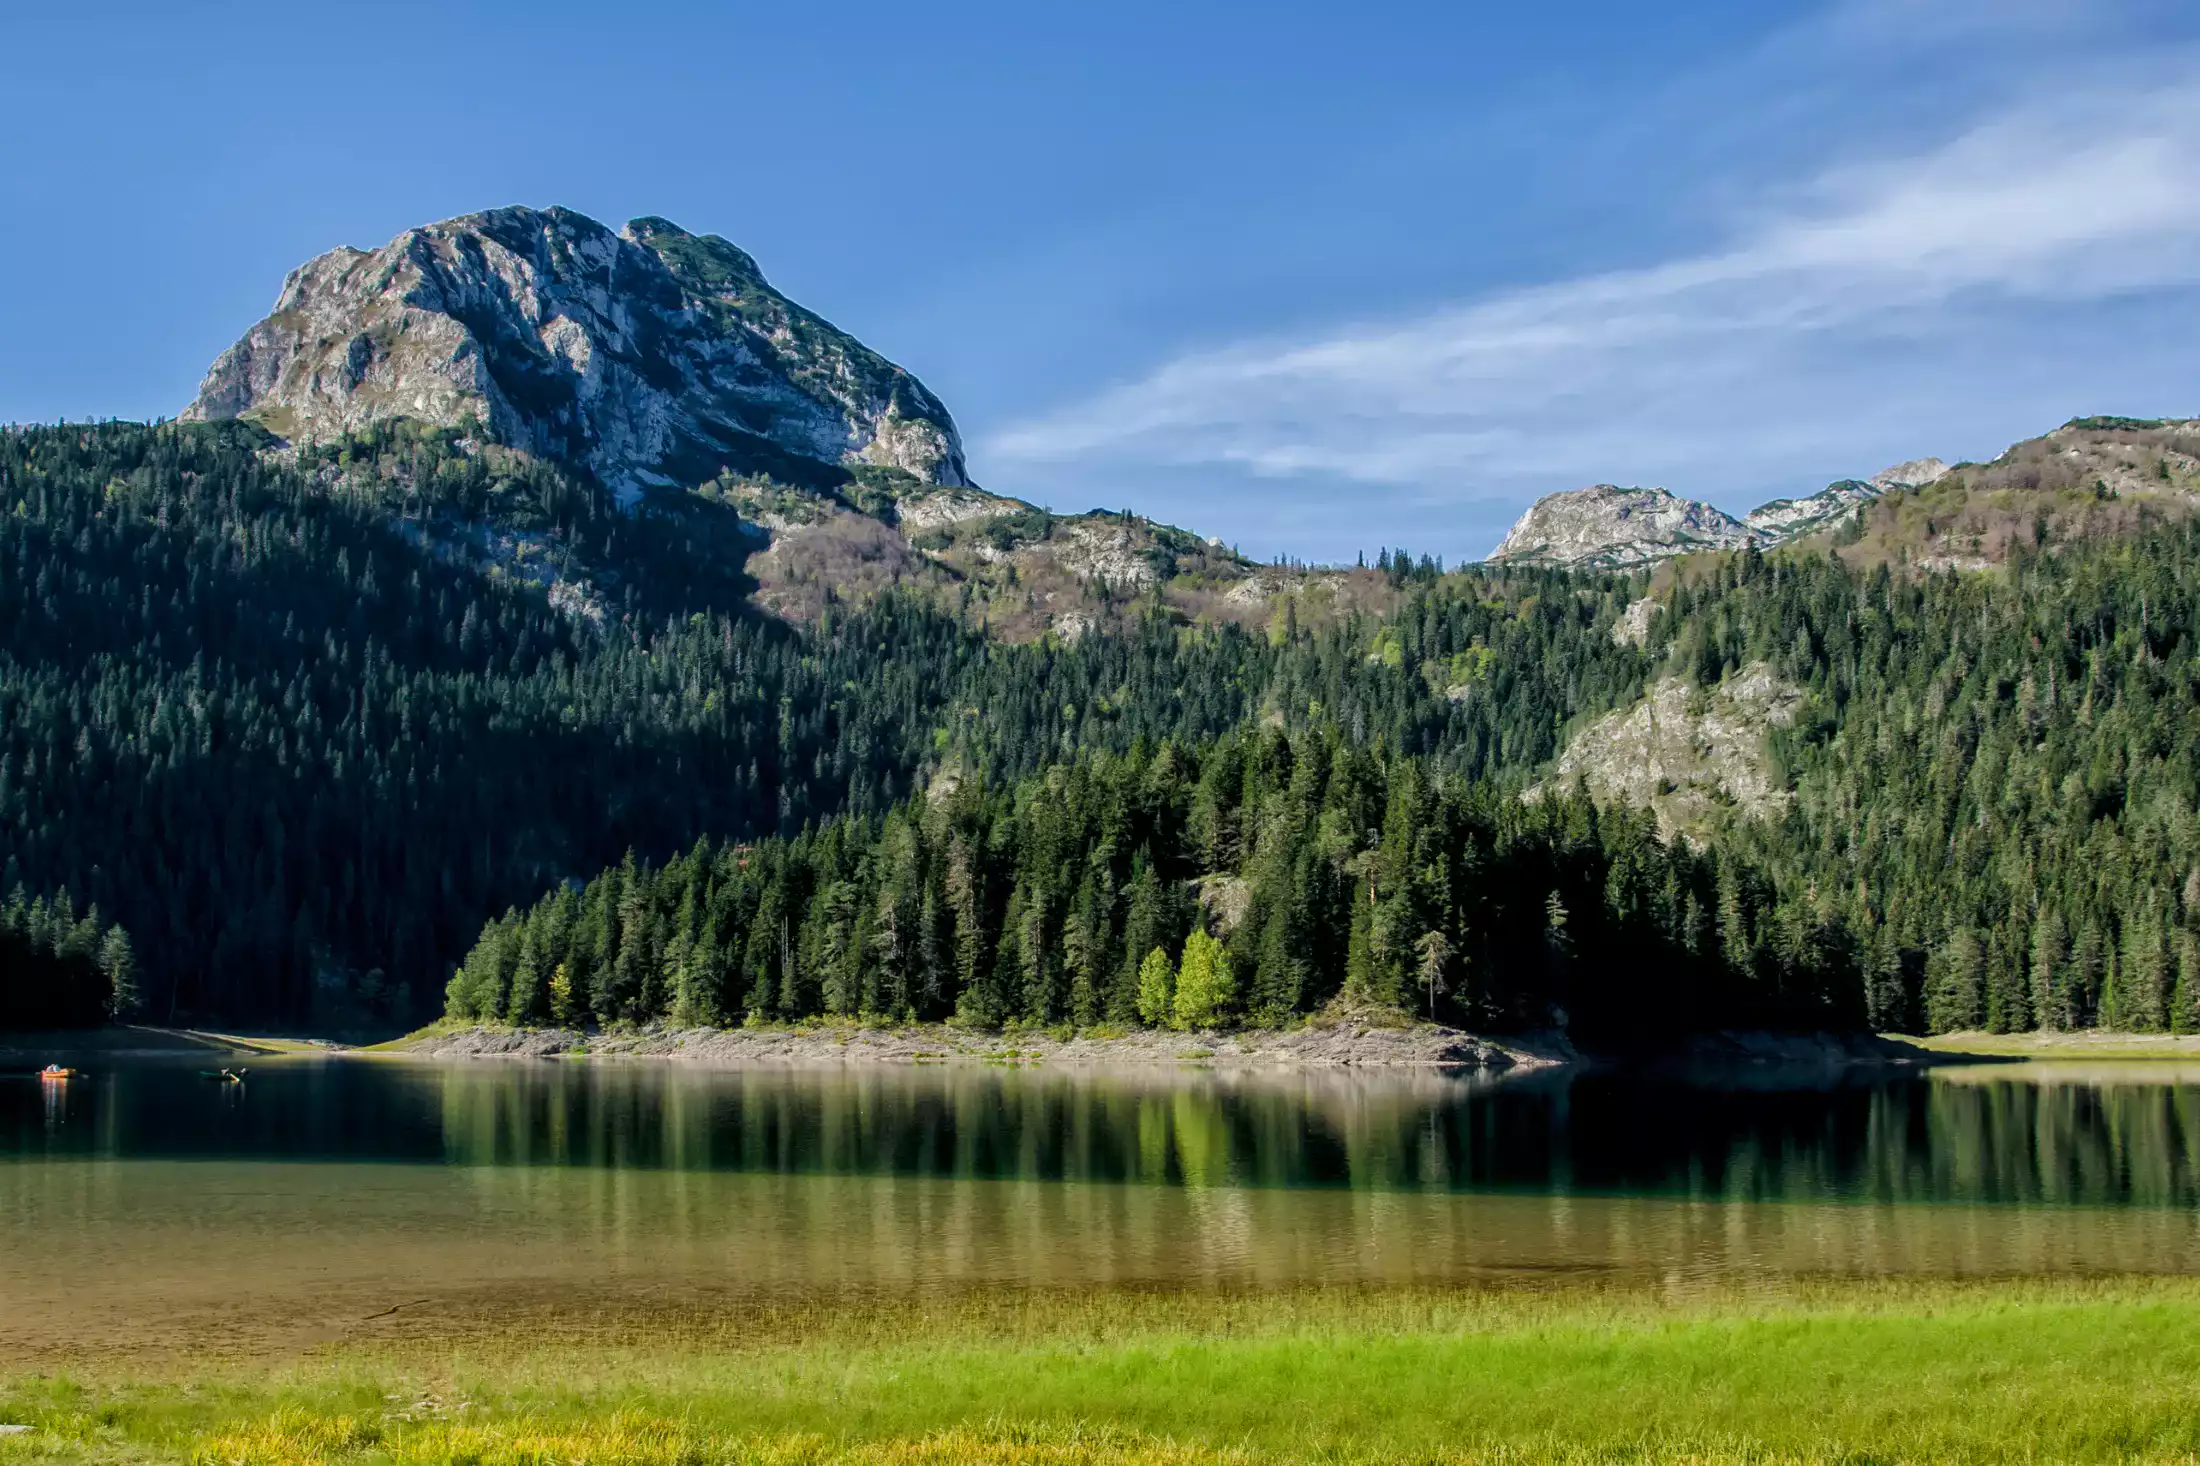 Mountain lake at Durmitor national park in Montenegro.